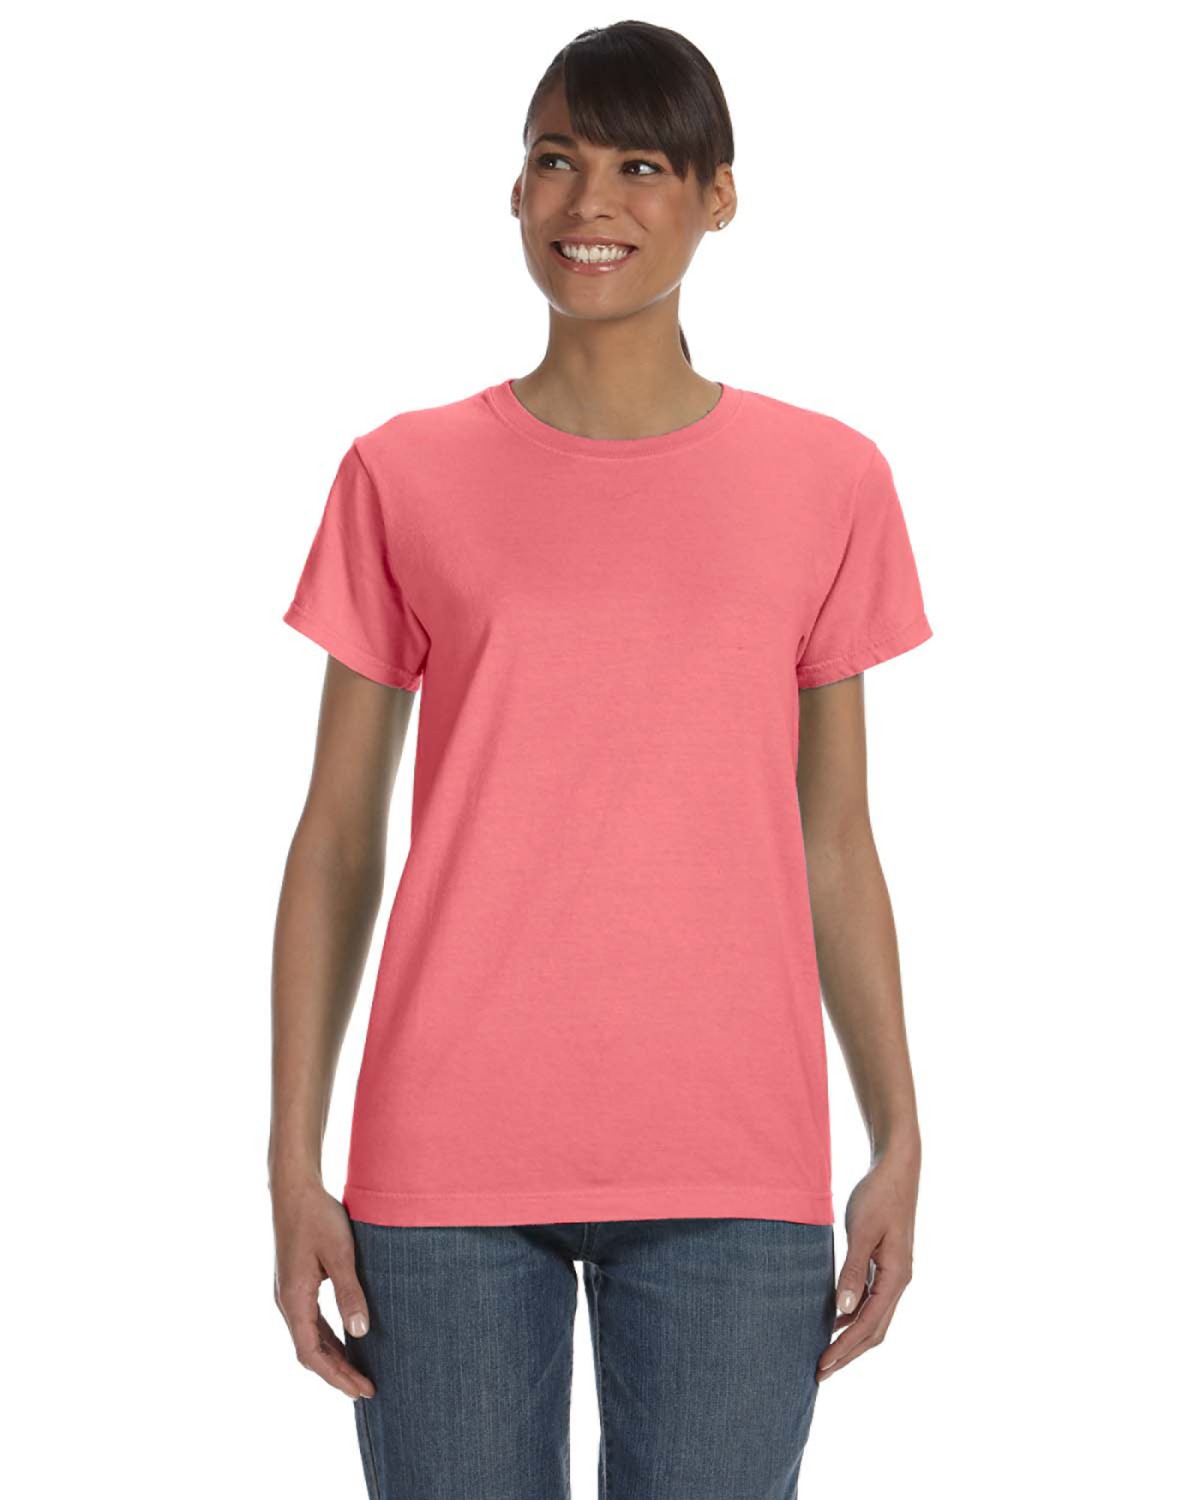 Printed Comfort Colors Ladies' 5.4 oz. T-Shirt